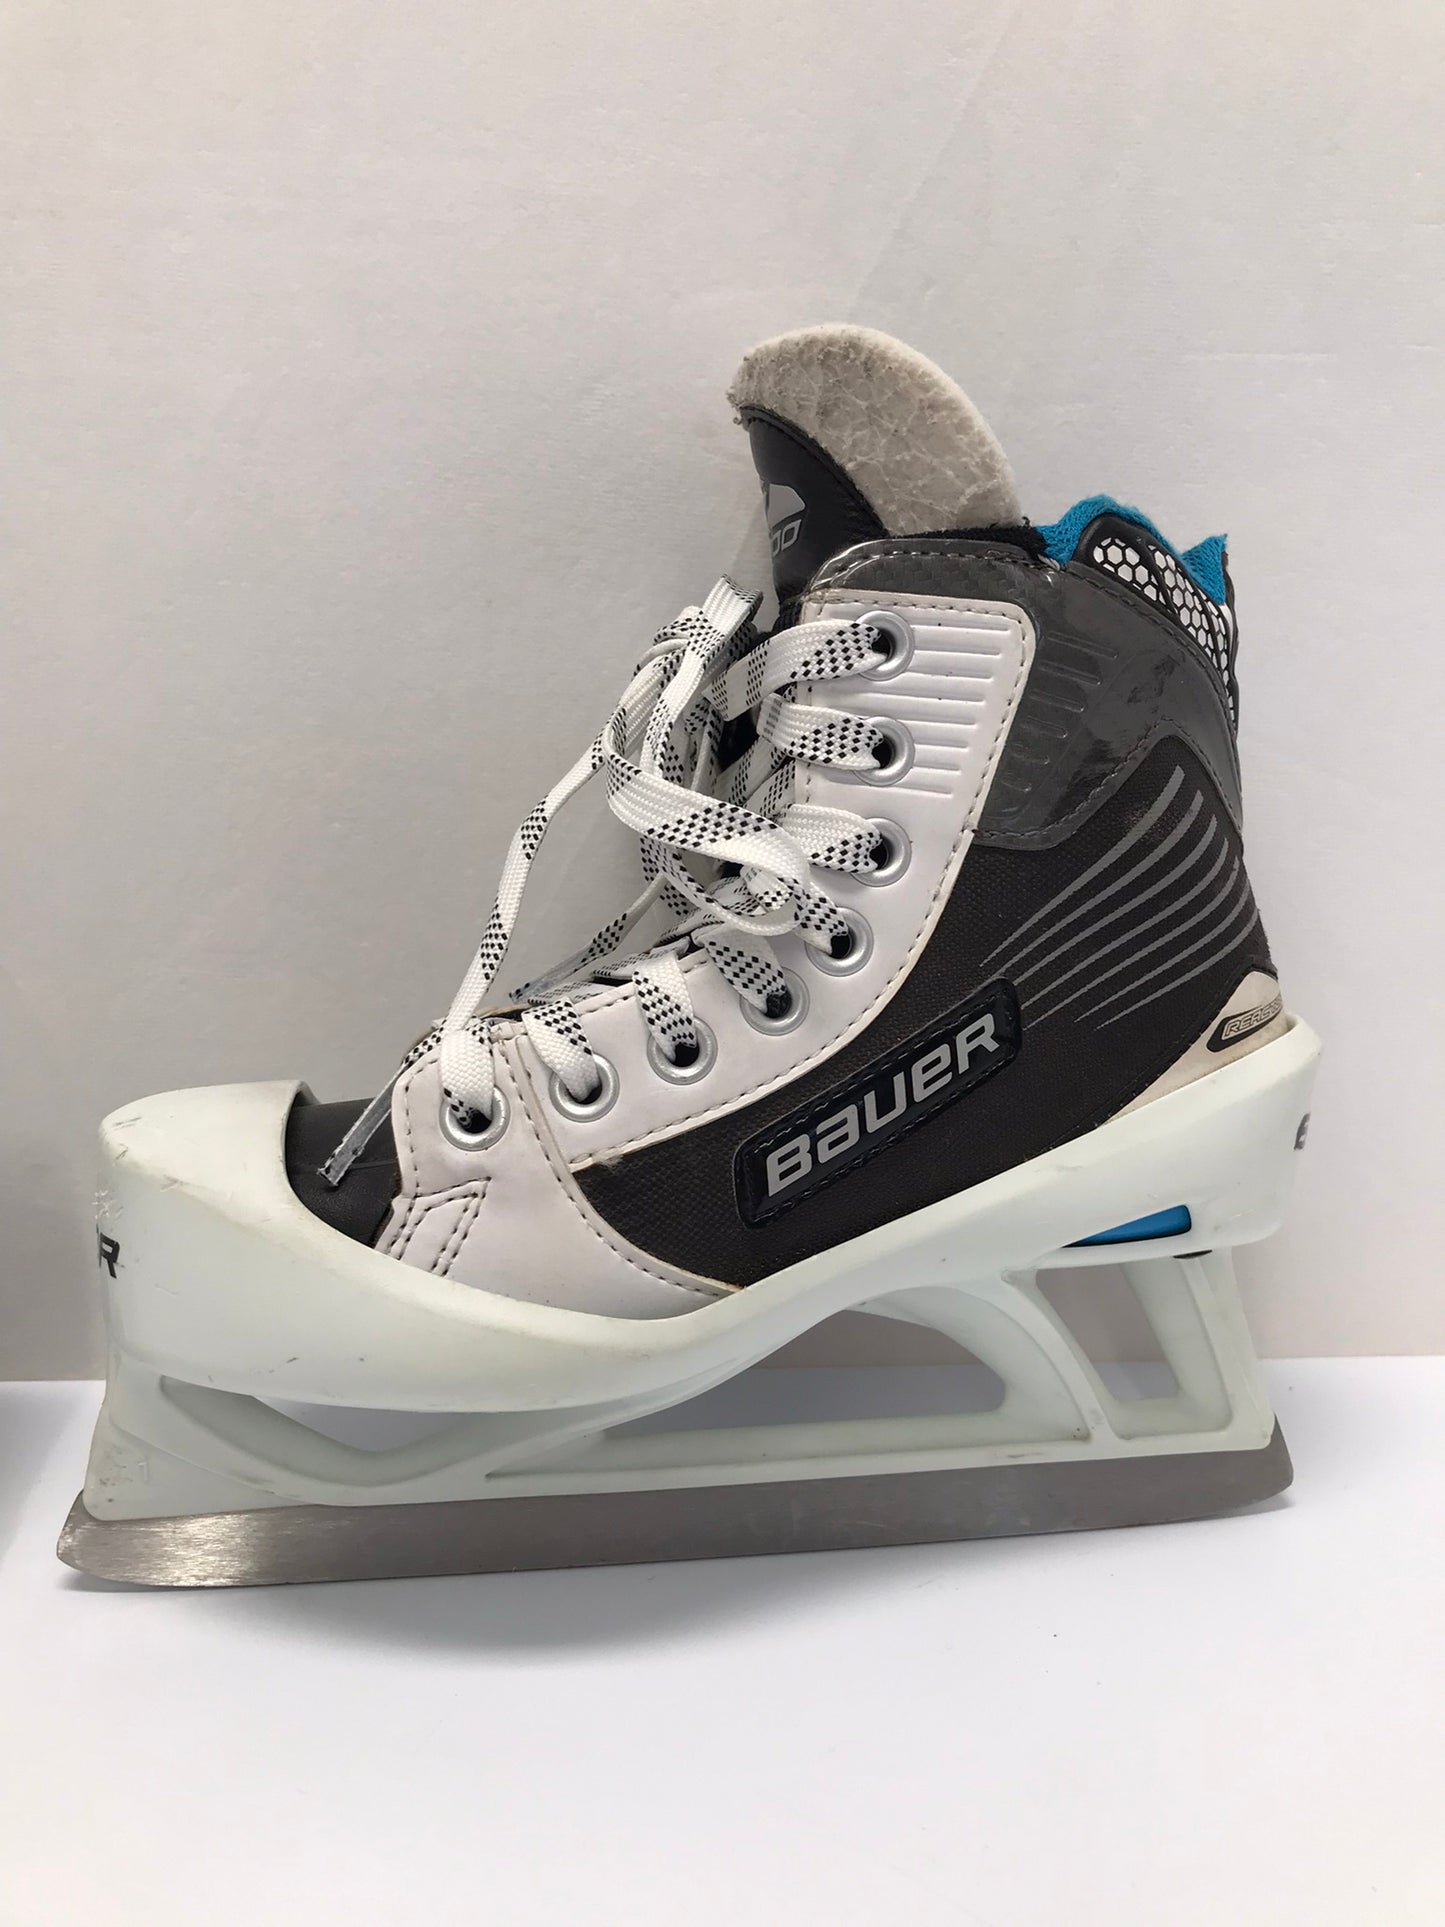 Hockey Goalie Skates Child Size 2 Shoe Size Bauer 2000